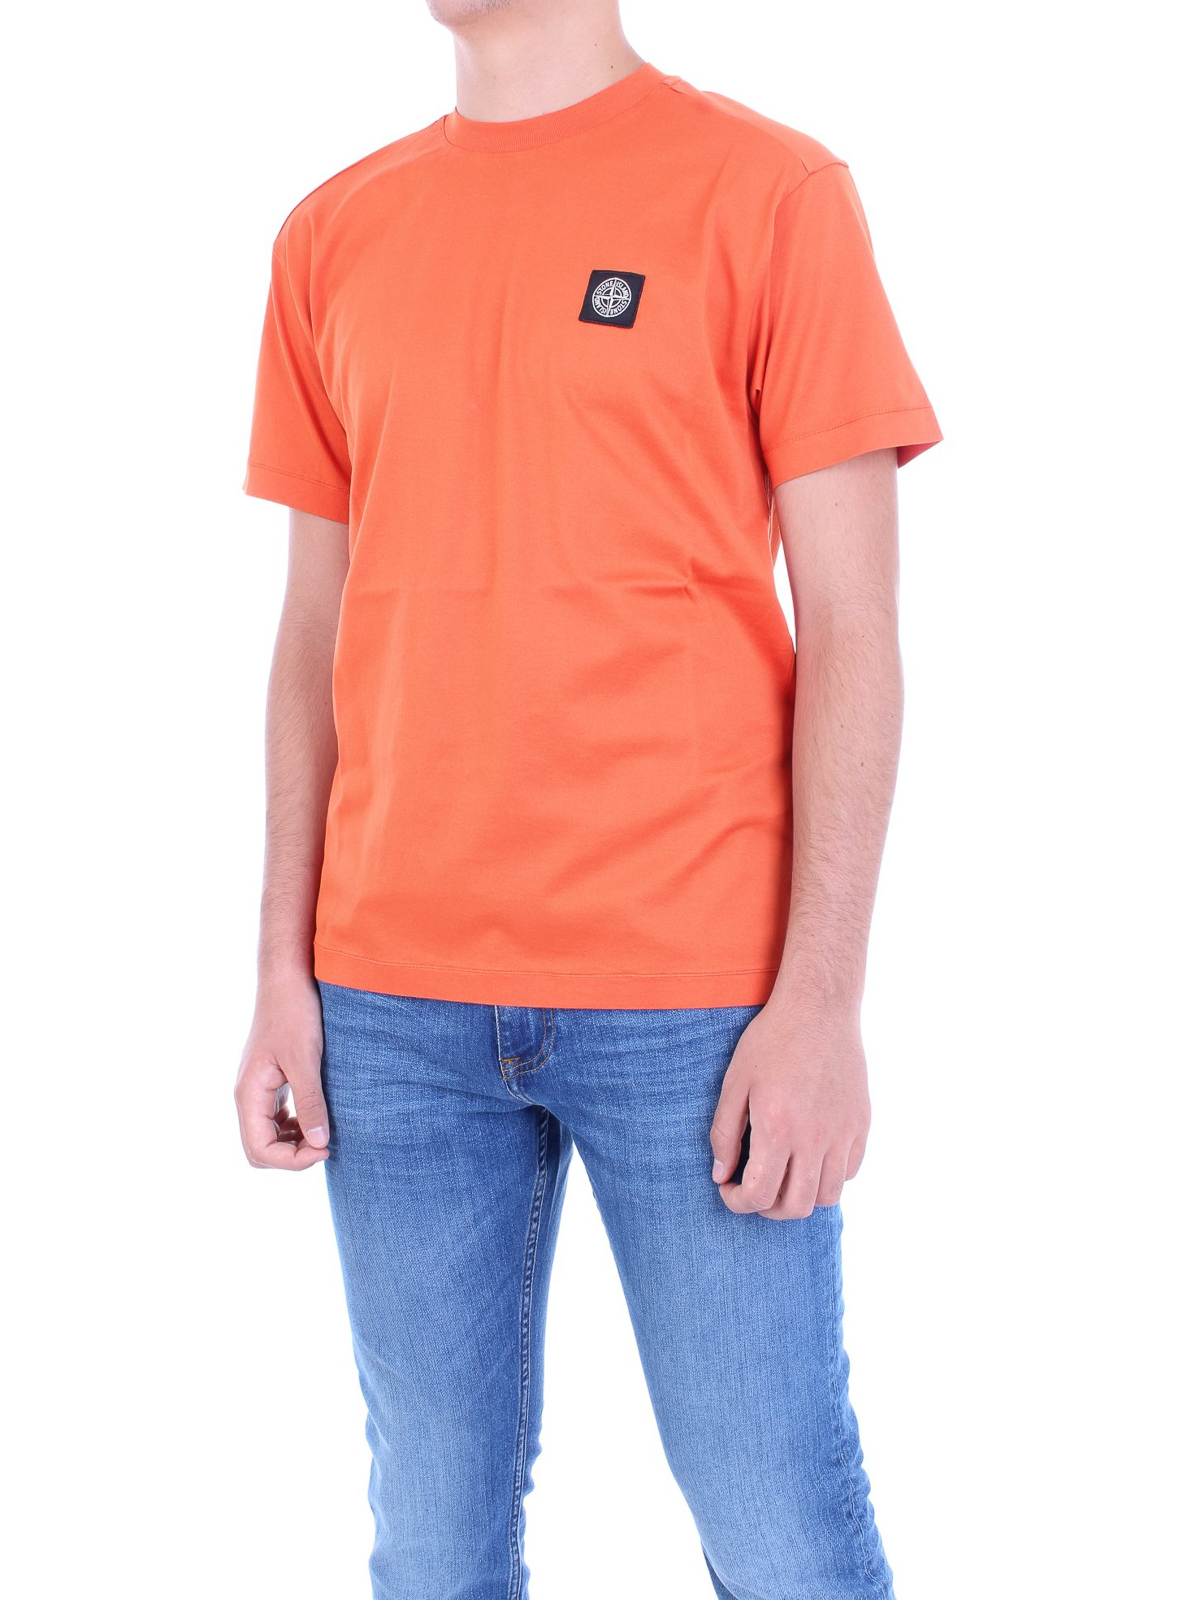 orange stone island t shirt